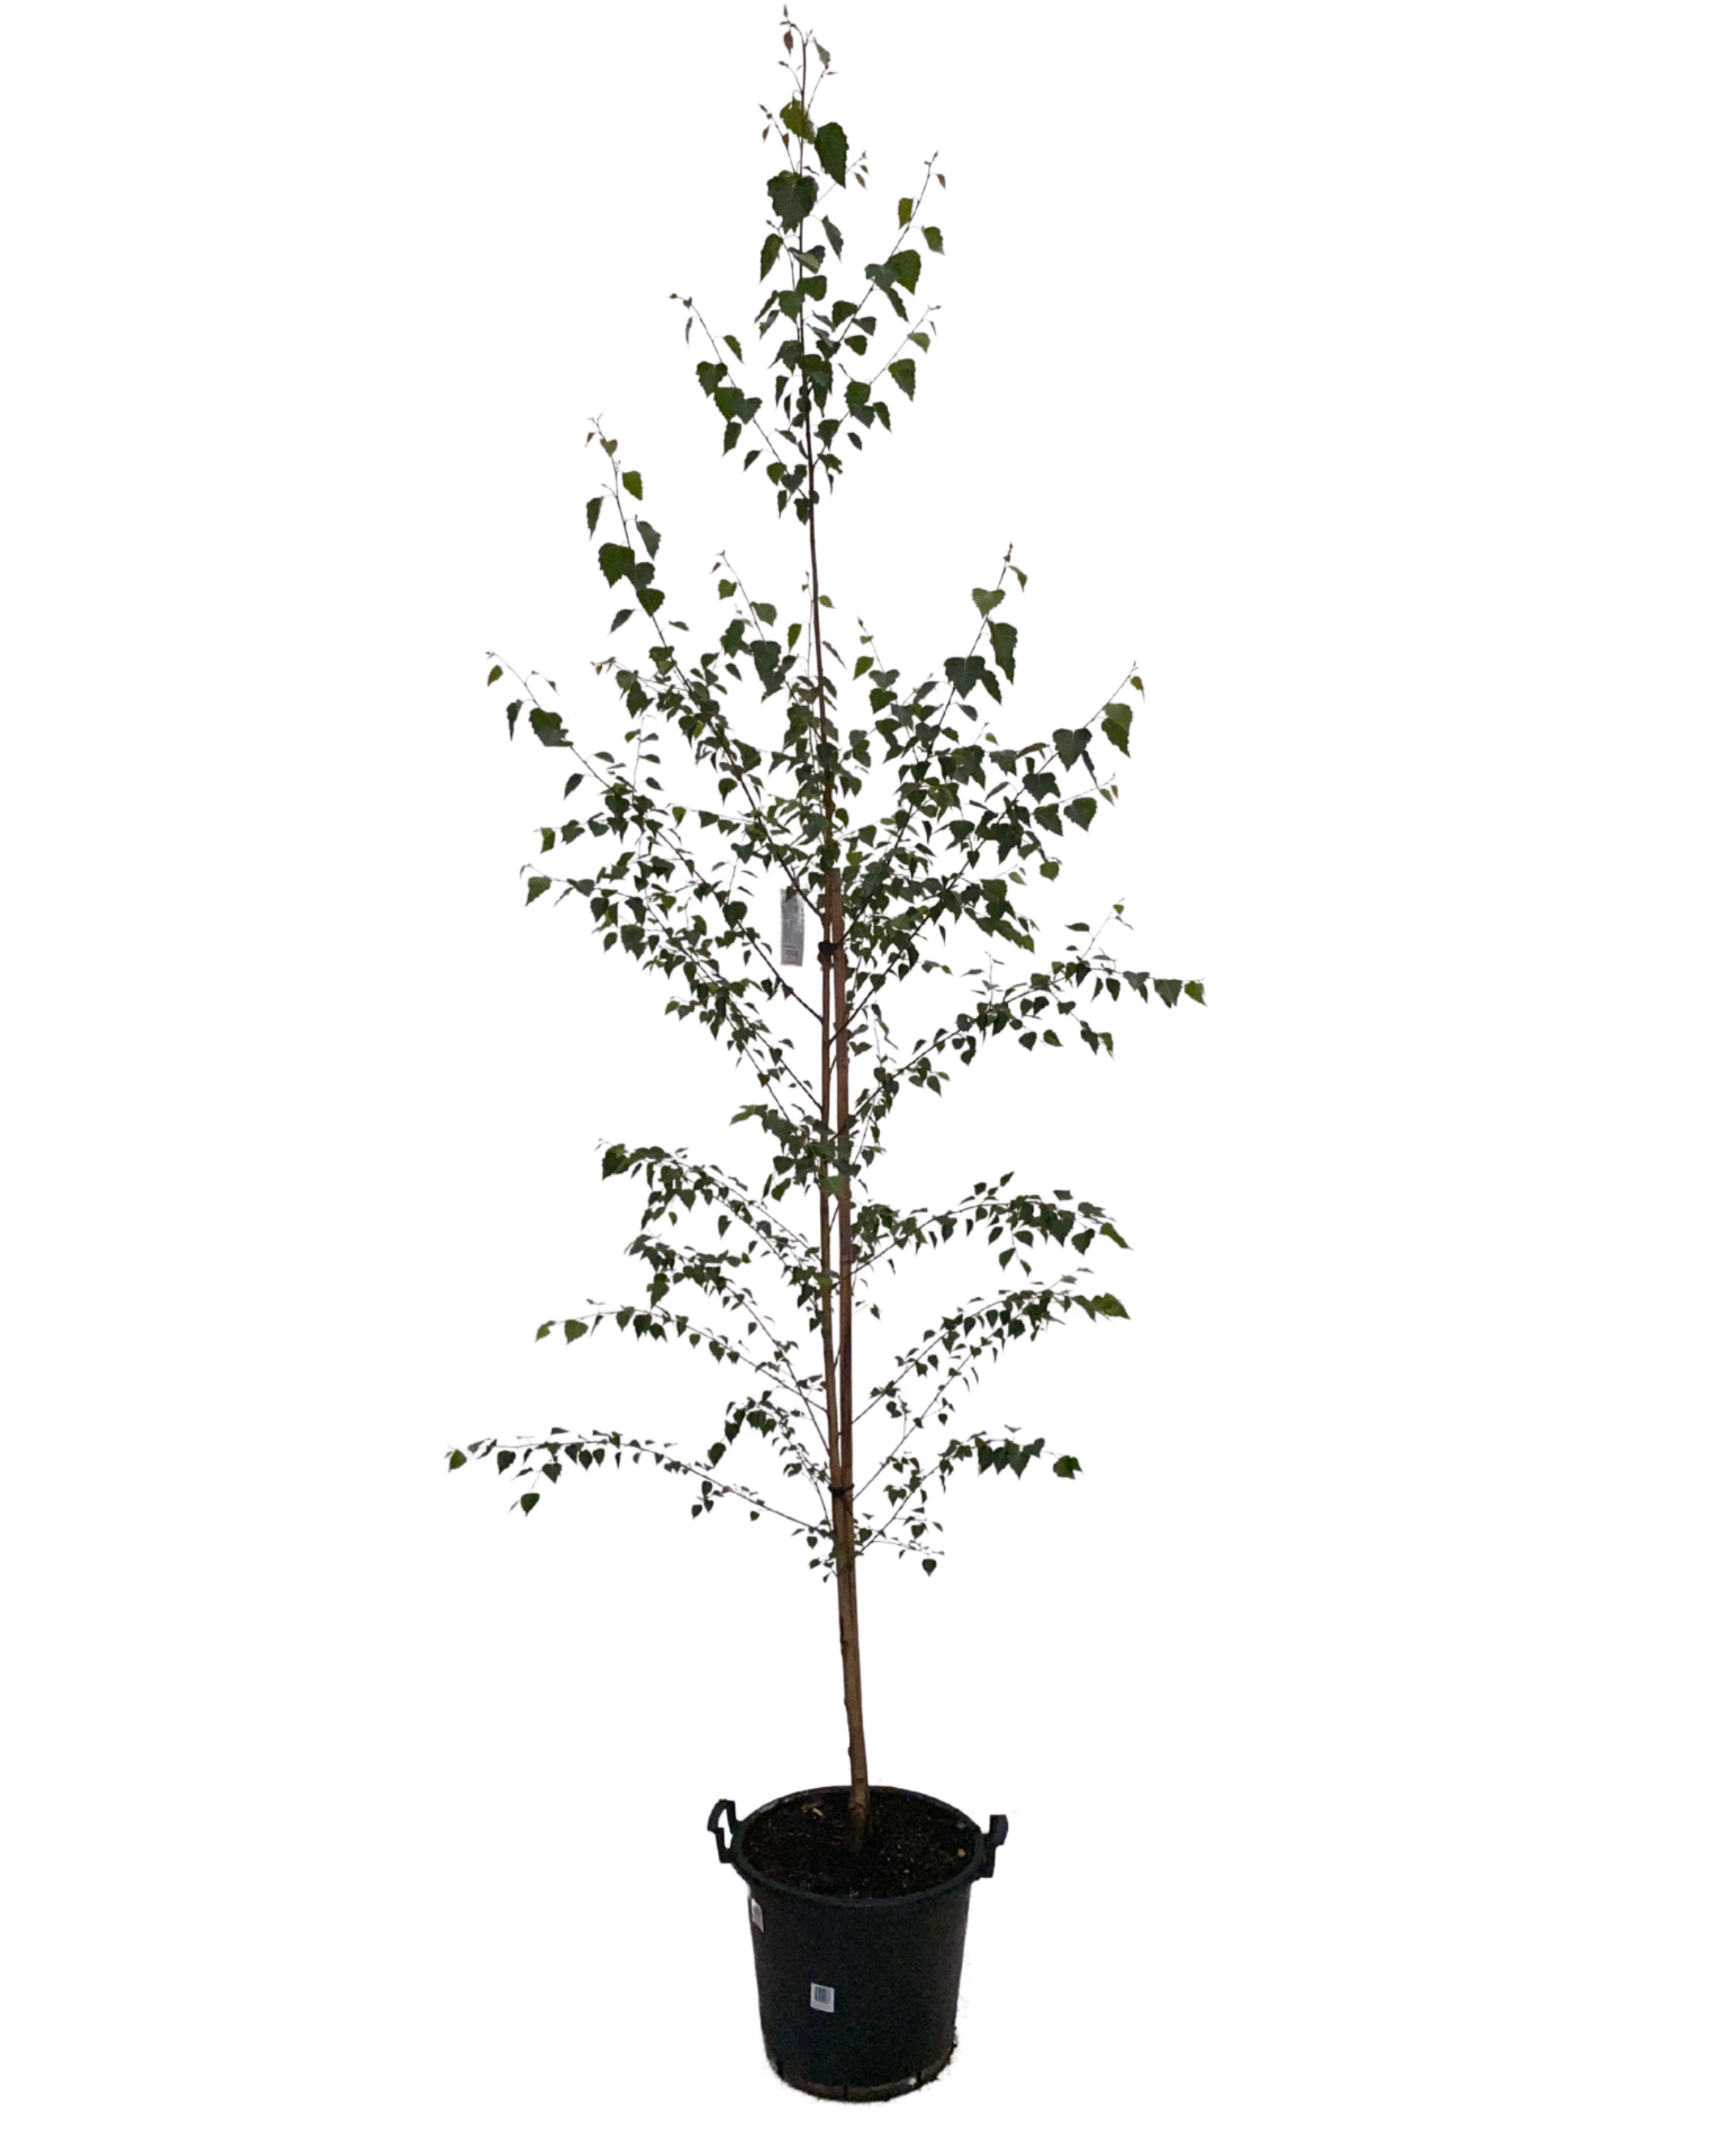 Silver Birch - Betula Pendula Moss White